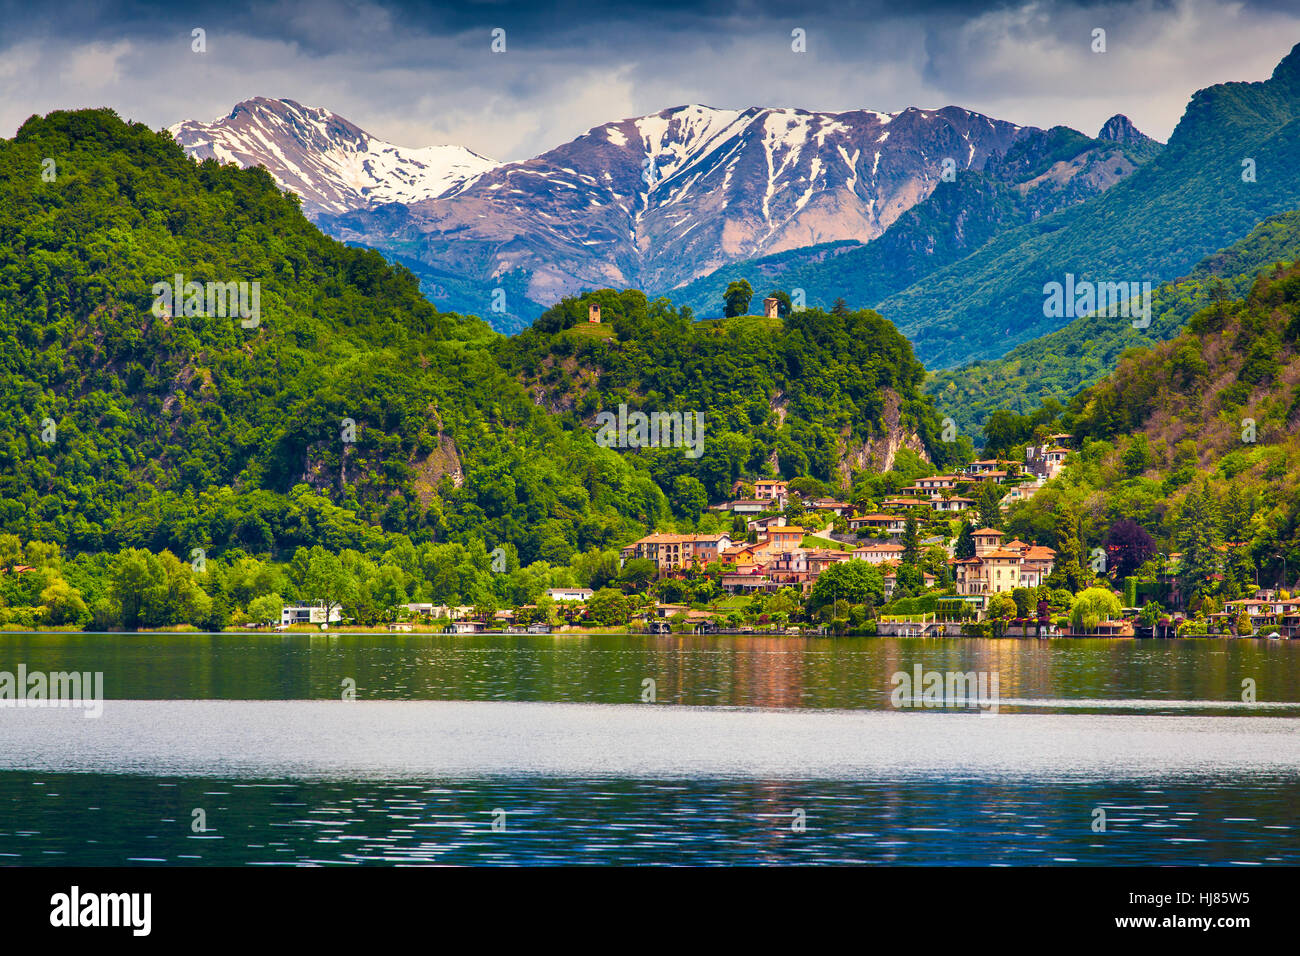 Avis de sity Arbostora, Lac de Lugano, Suisse, Alpes. Banque D'Images